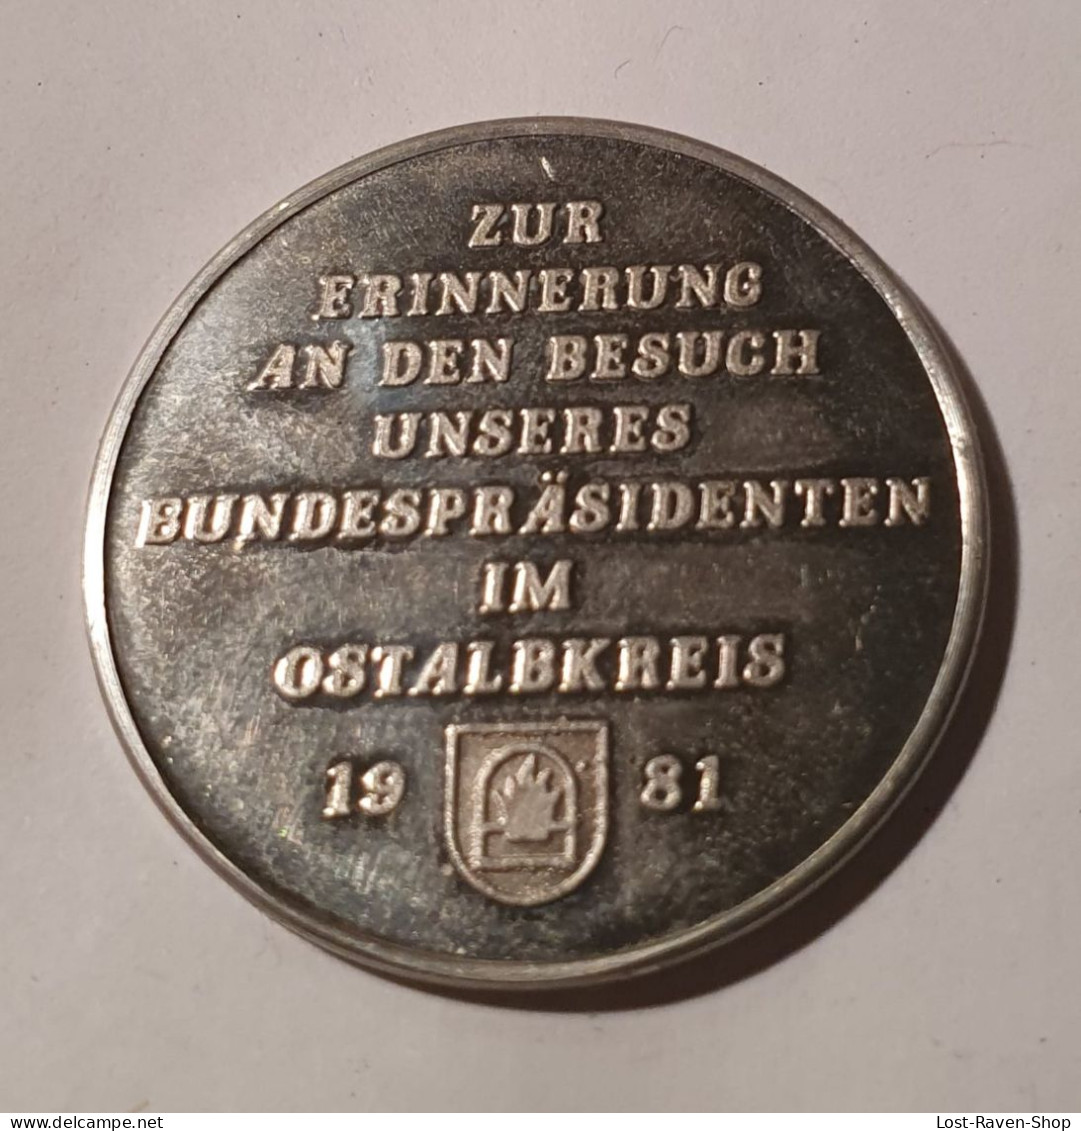 Zur Erinnerung An Den Besuch Unseres Bundespräsidenten Im Ostalbkreis 1981 - Karl Carstens - Elongated Coins